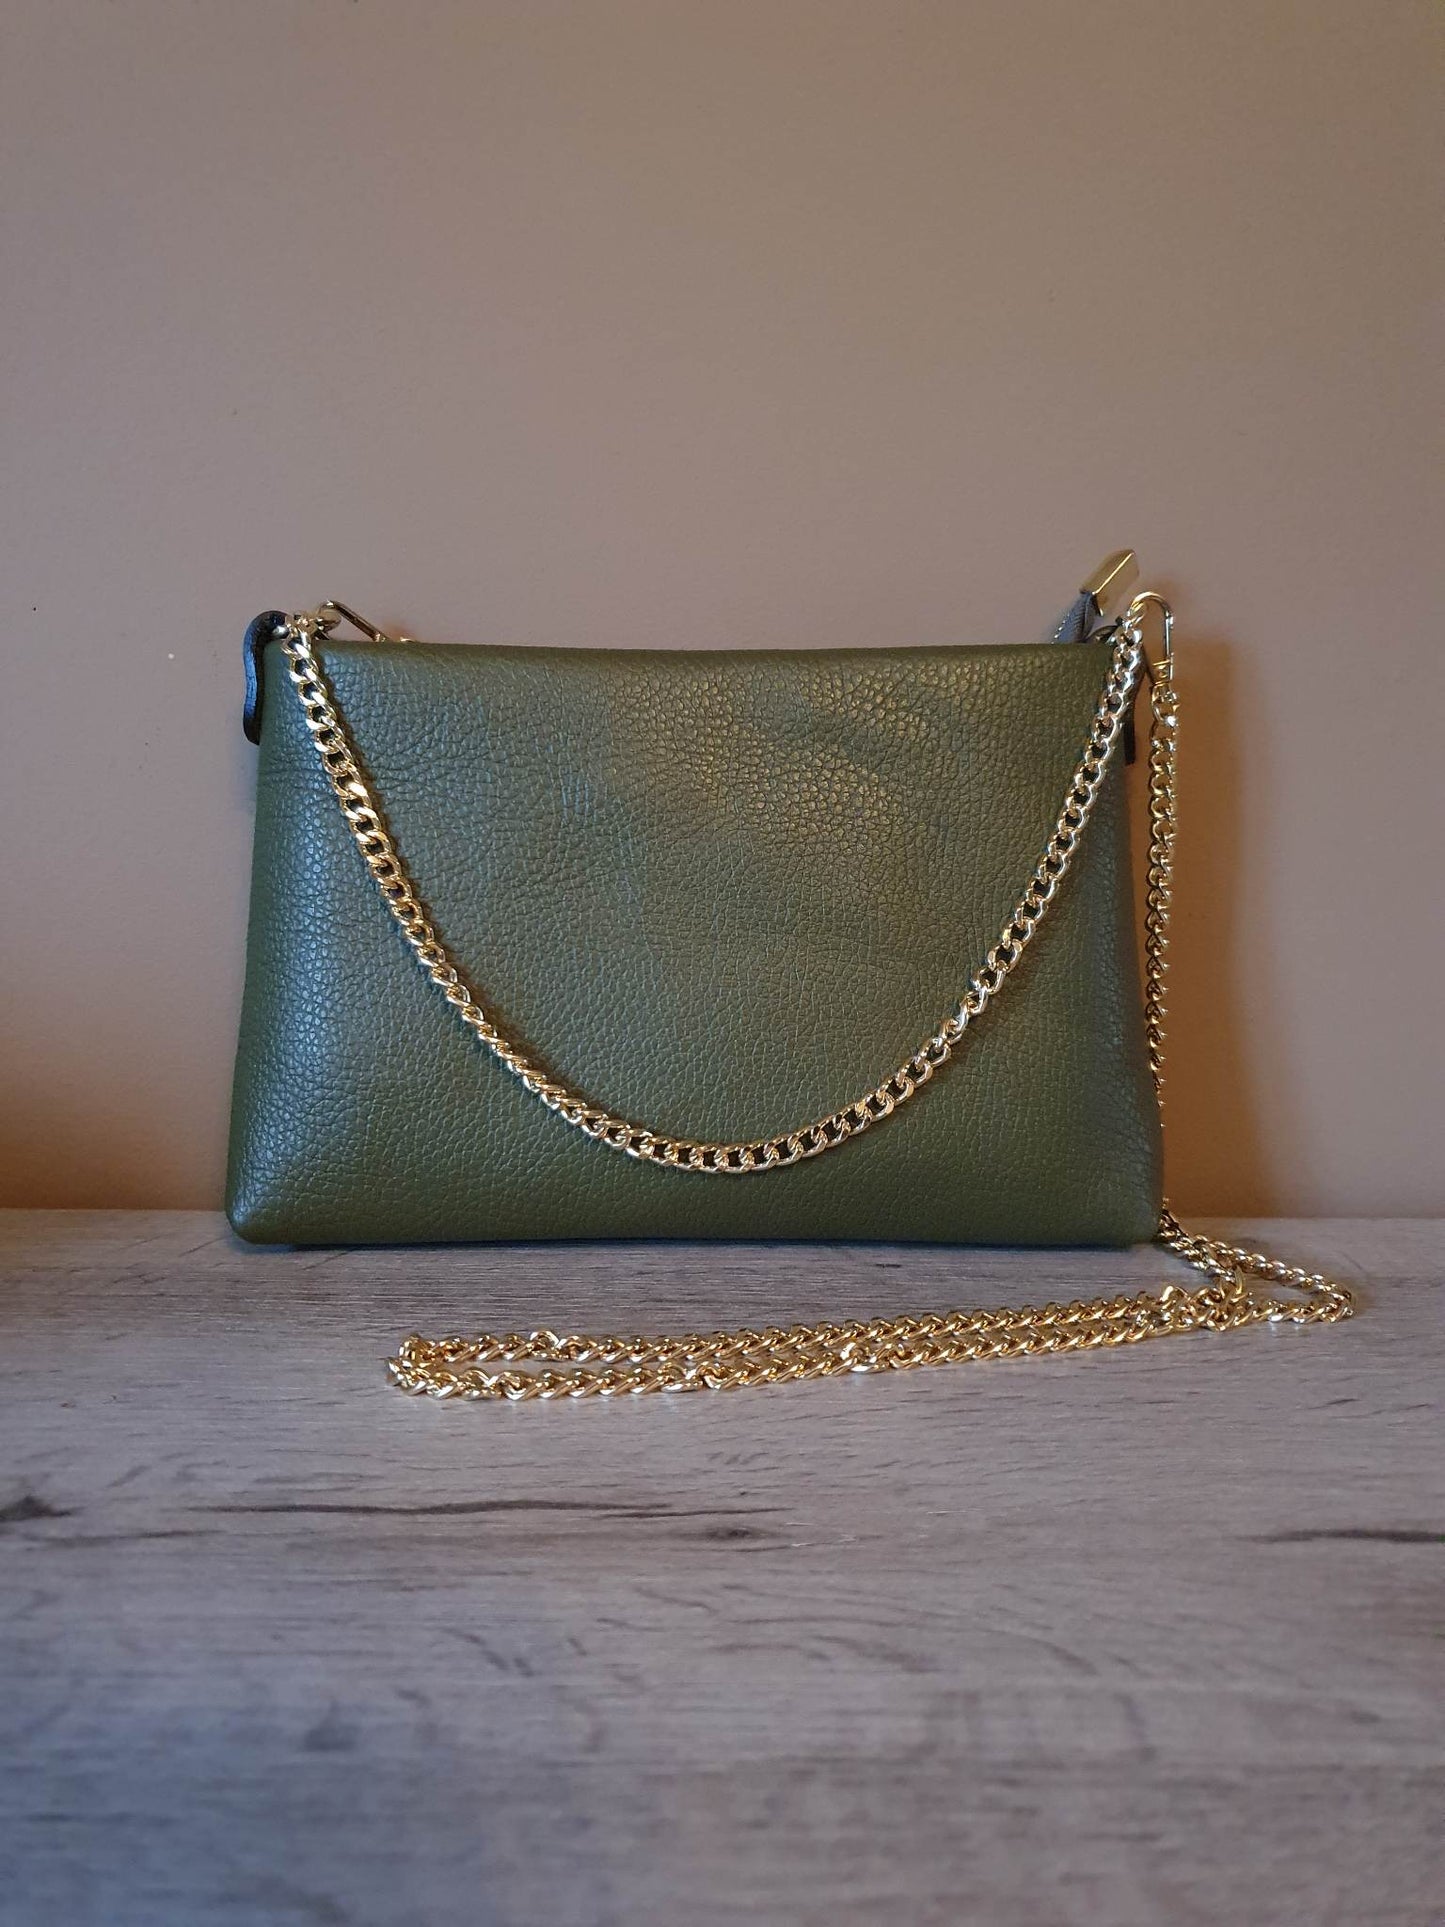 Simple green bag